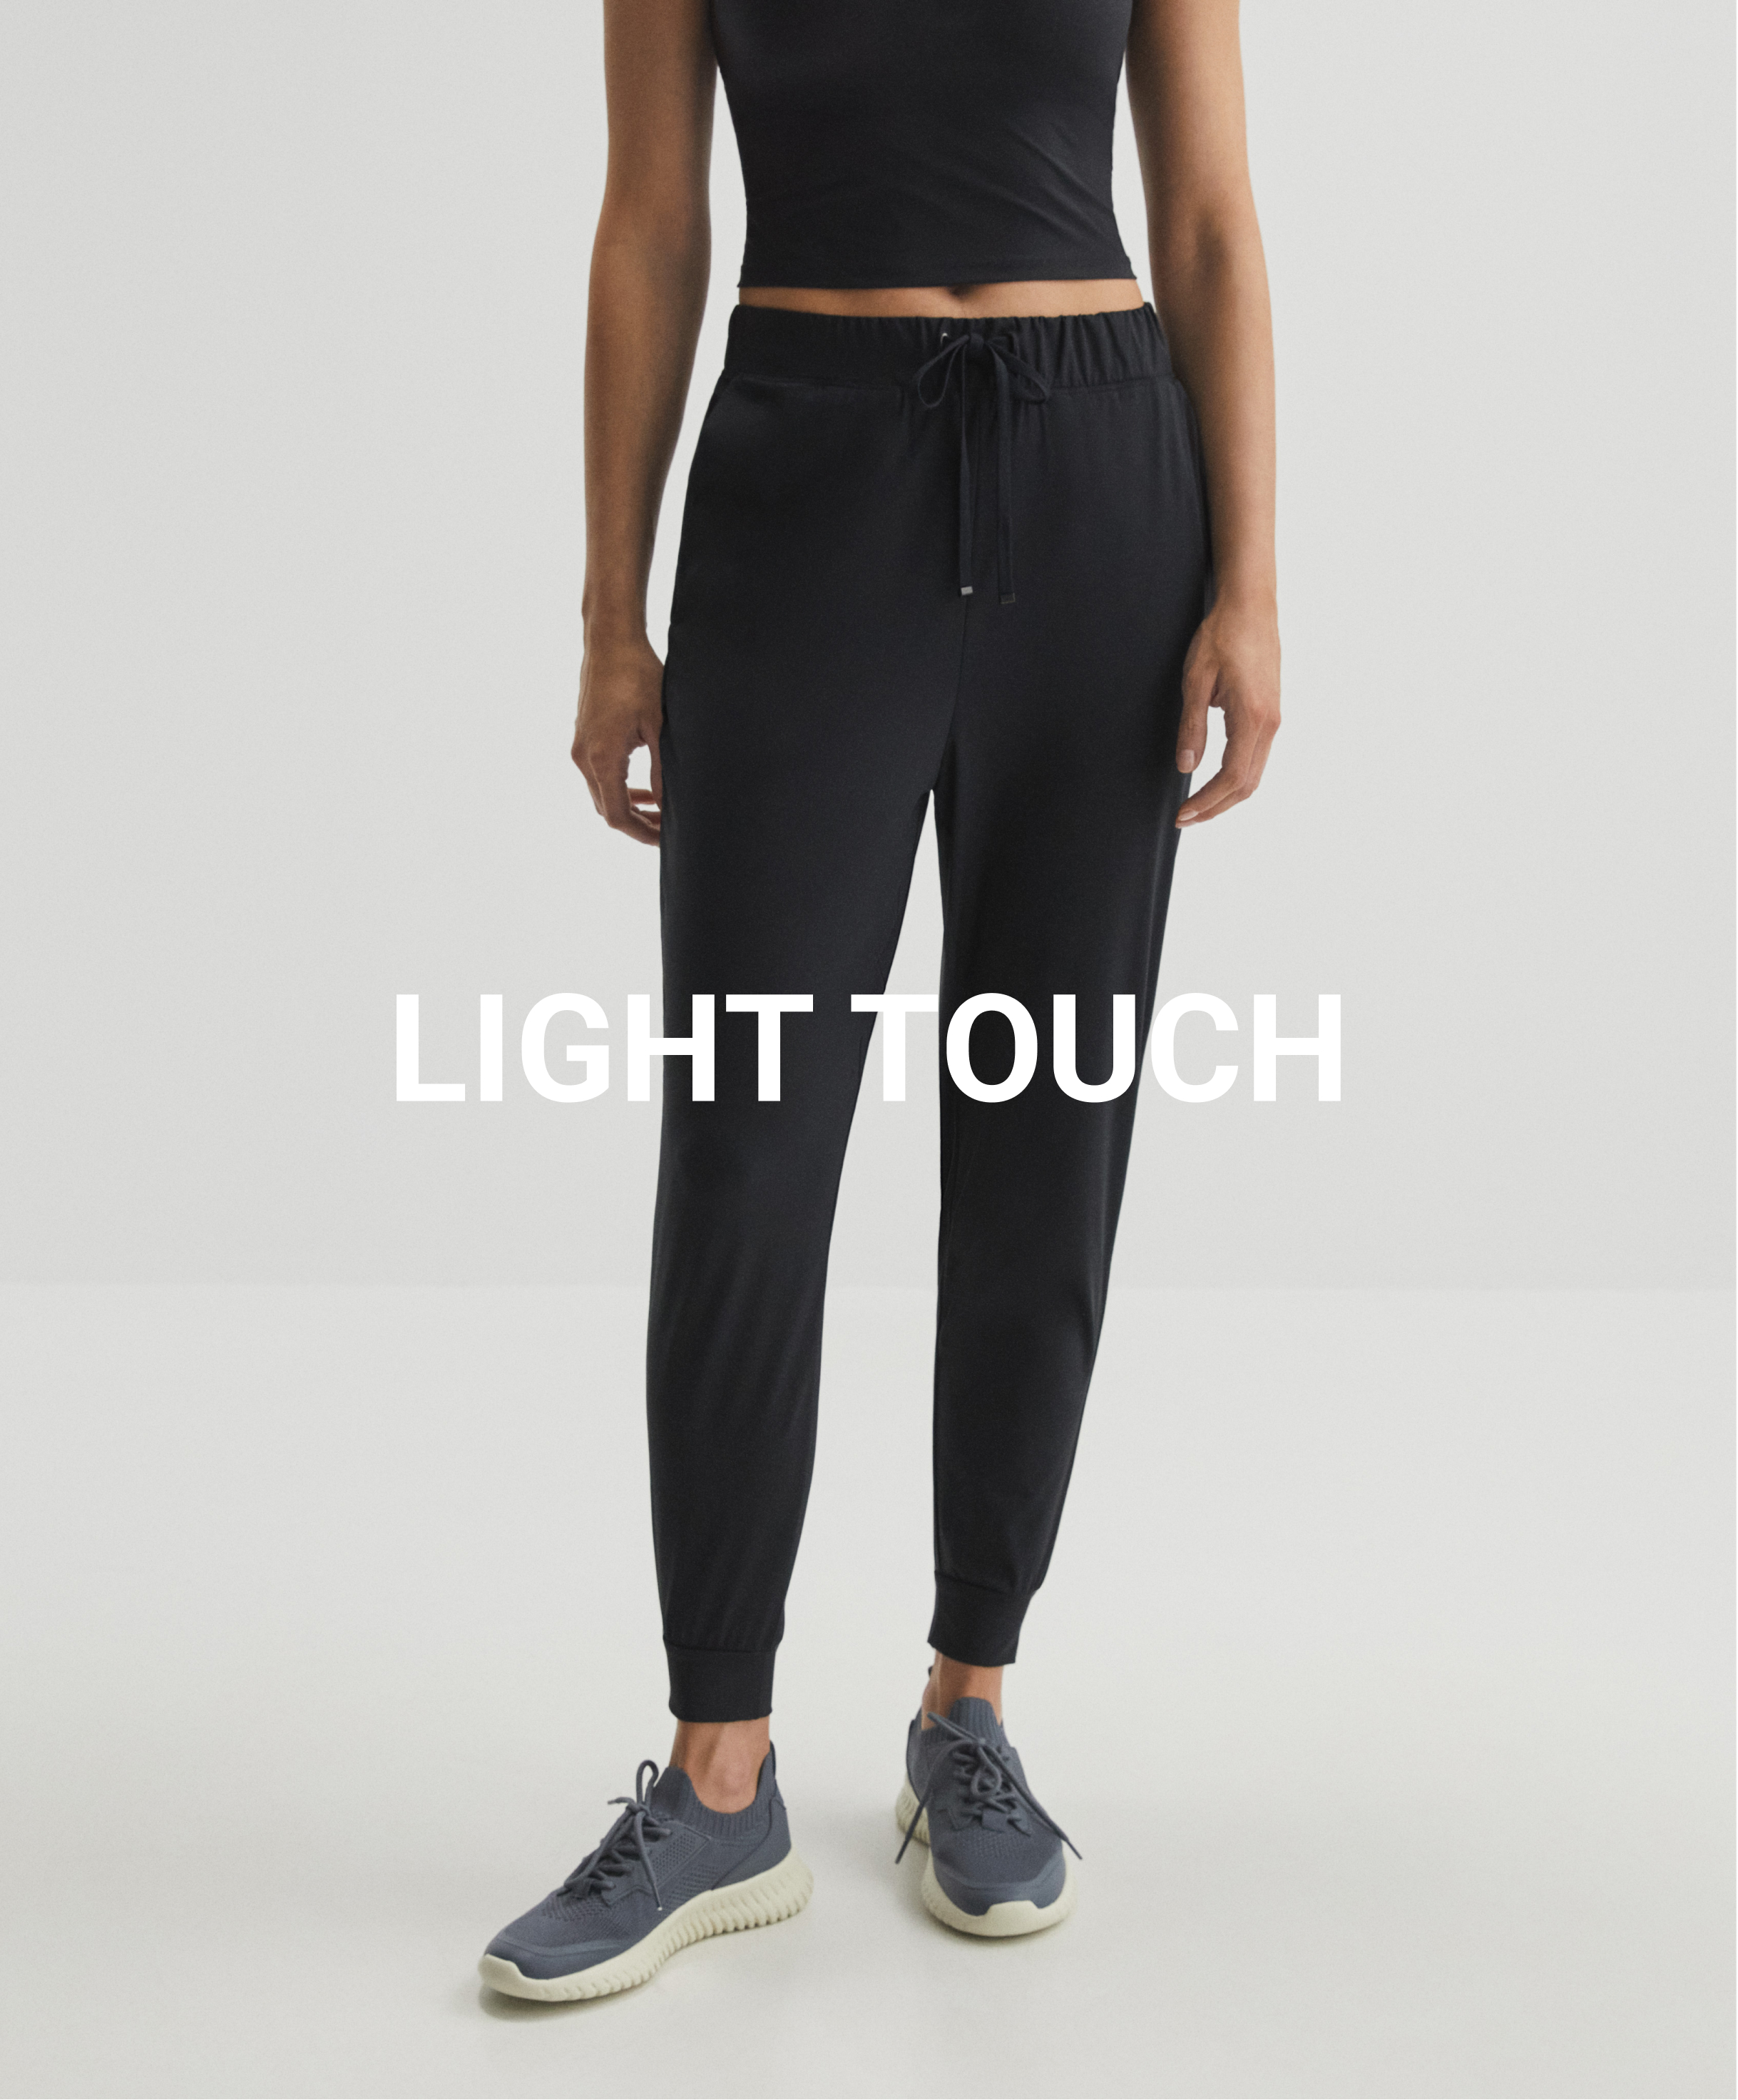 Pantalons de jòguing classic light touch